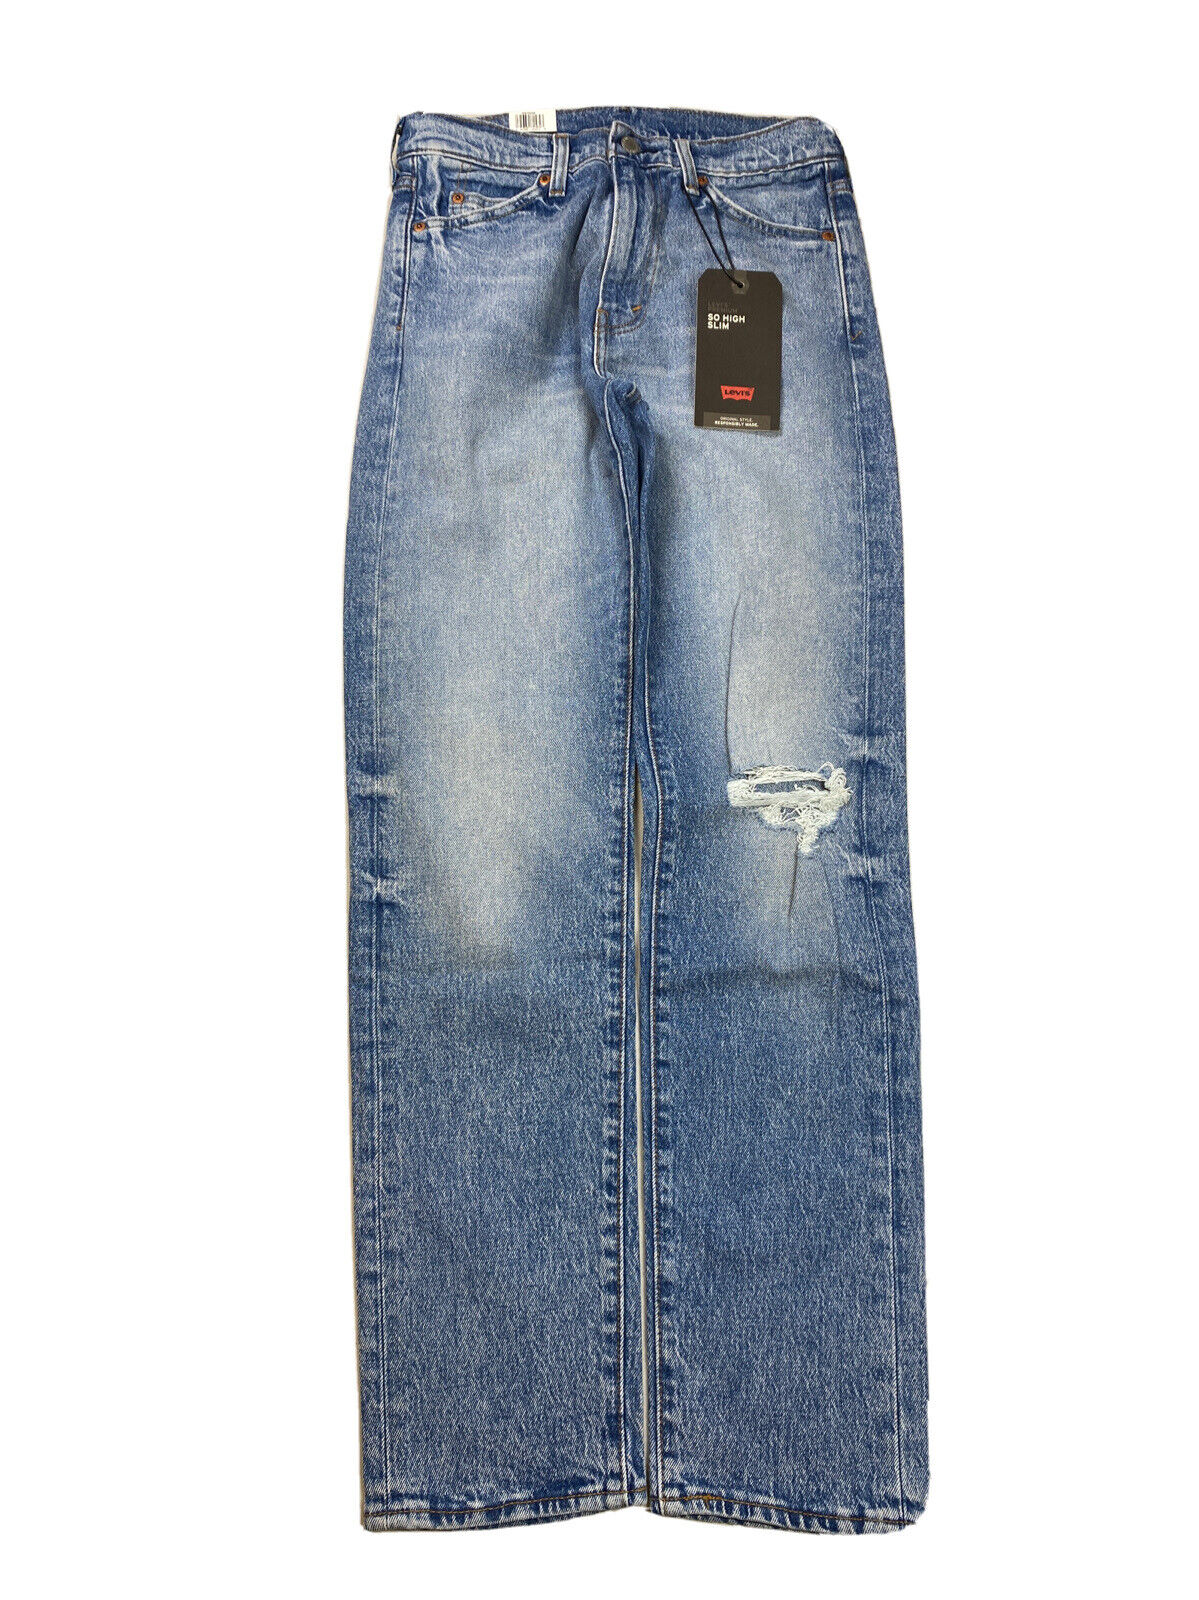 NUEVOS jeans desgastados y delgados con lavado claro y tan altos de Levis para hombre - 29x32